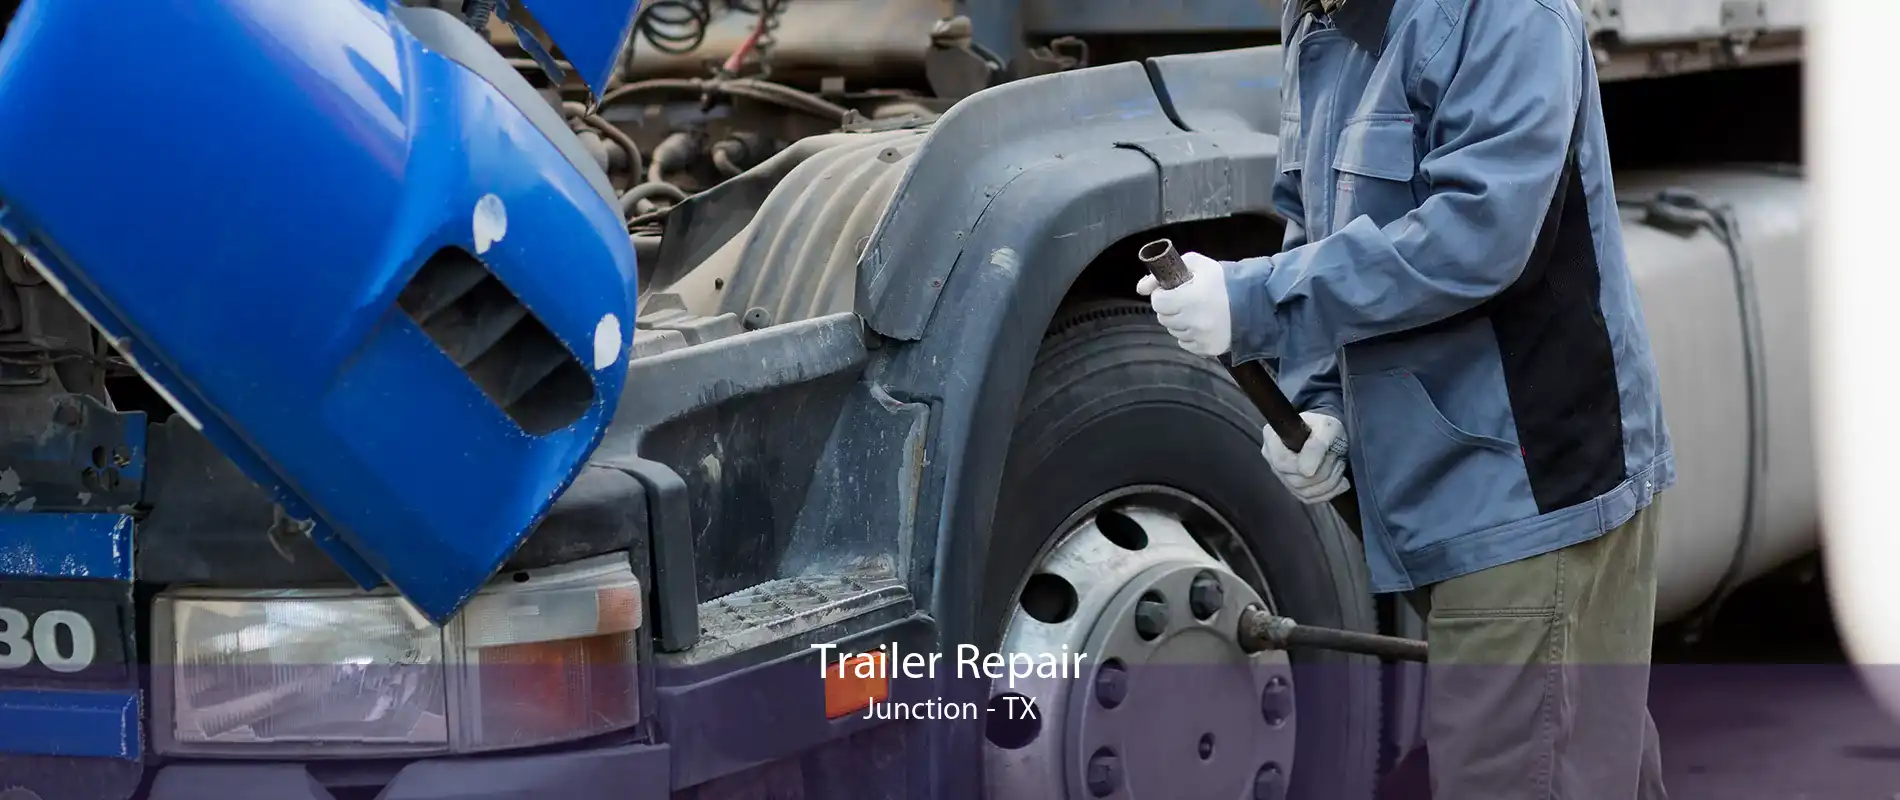 Trailer Repair Junction - TX